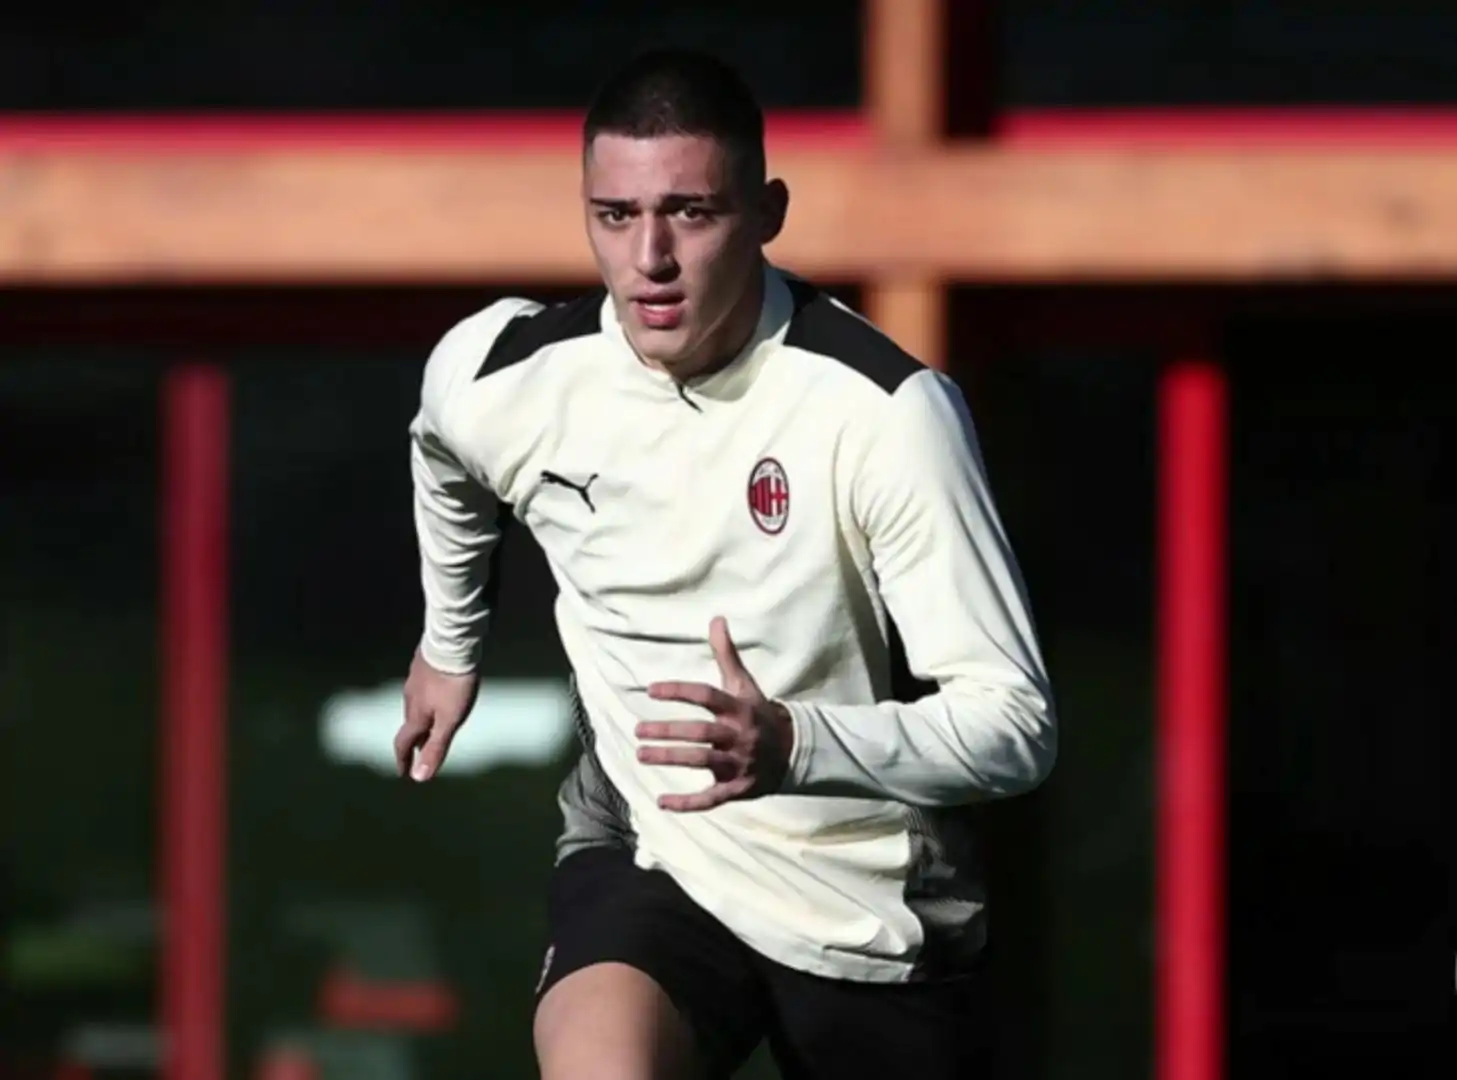 Acquistato per 4 milioni dal Milan, Maldini ha deciso: novità su Lazetic